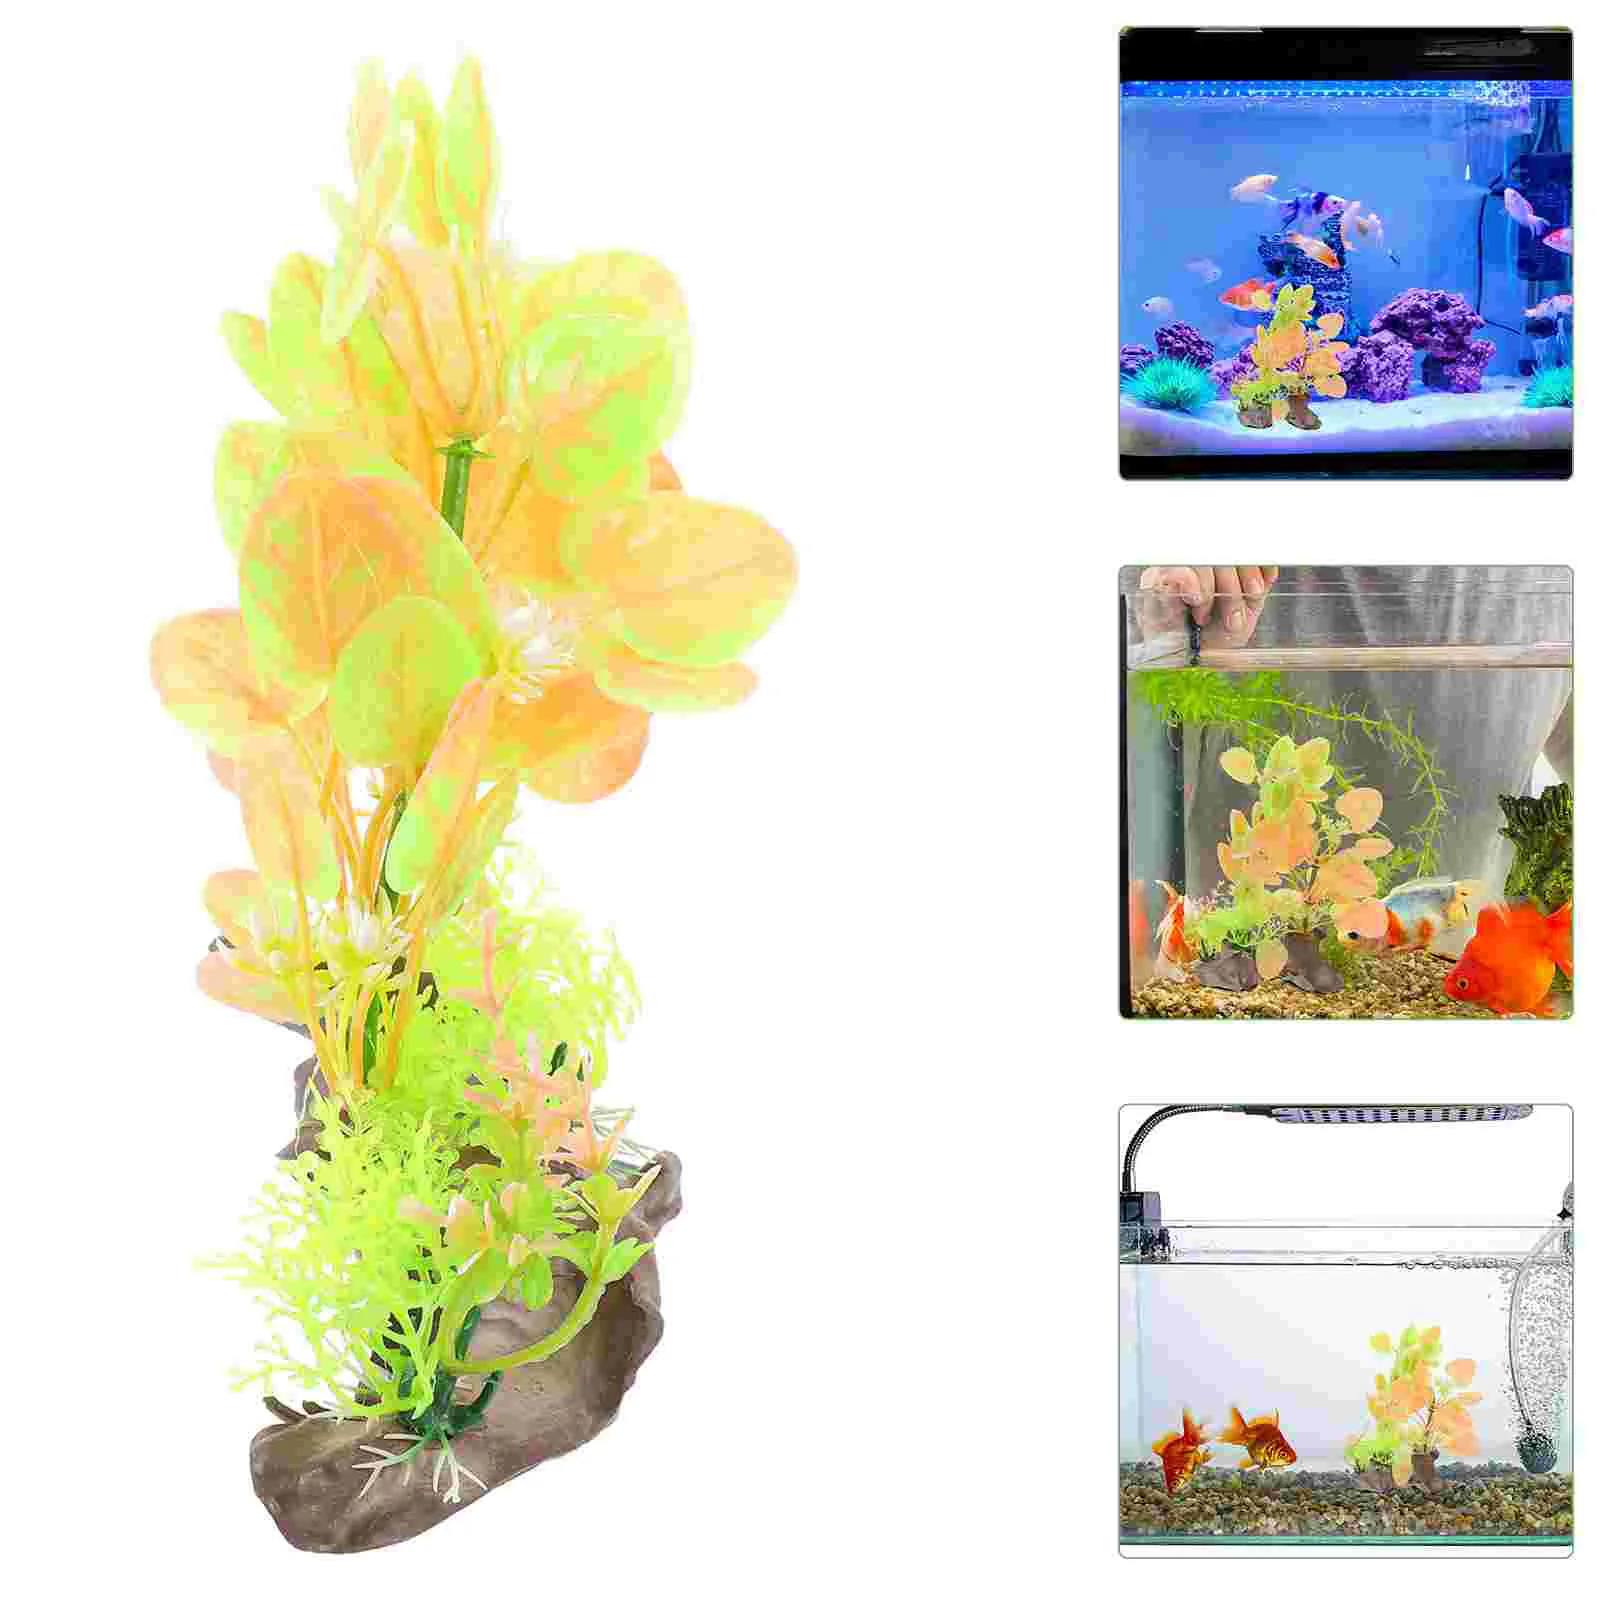 

2 Pcs Aquarium Decoration Plants Realistic Fake Fish Accessories Tank Landscaping Aquatic Artificial